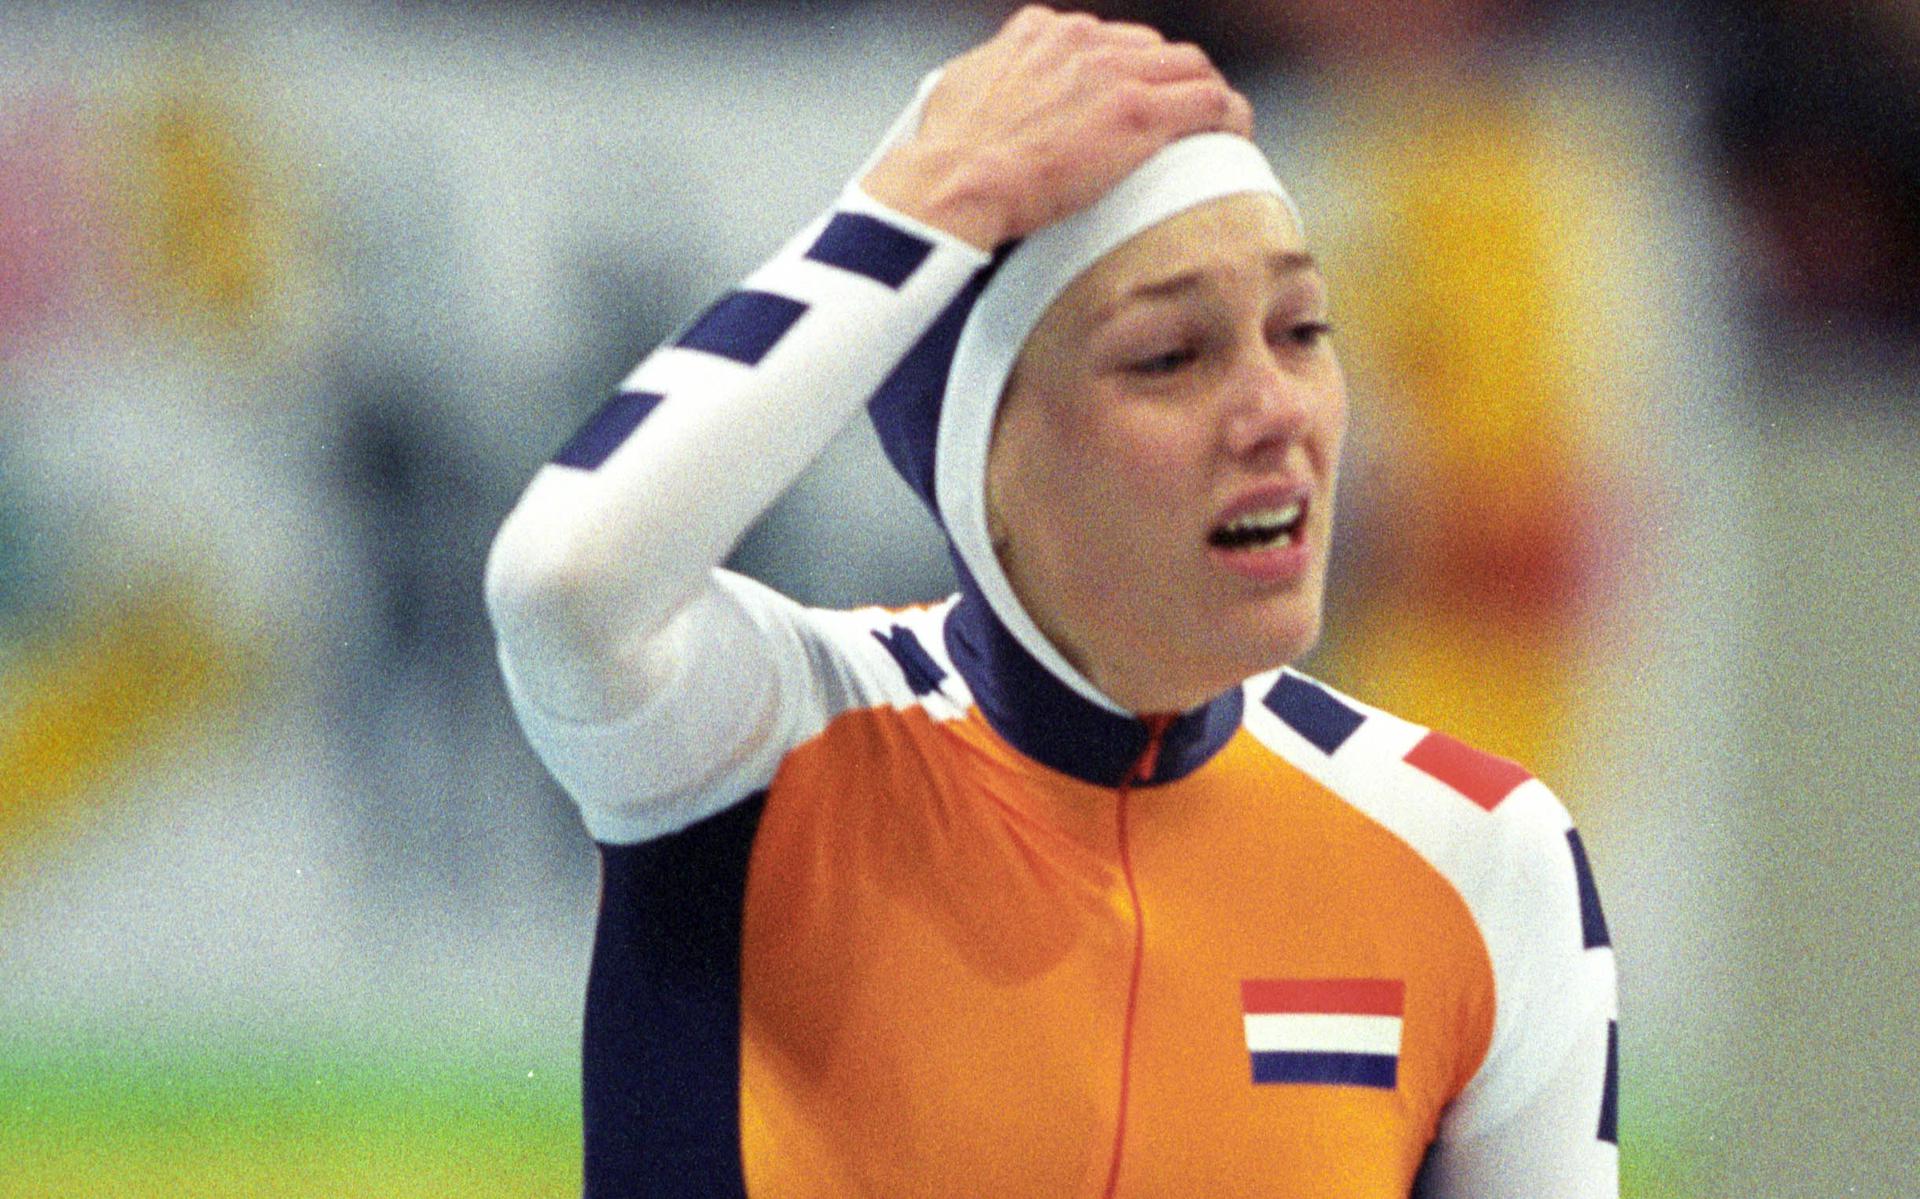 Marianne Timmer won twee gouden medailles (1000- en 1500 meter) bij de Olympische Spelen in Nagano.